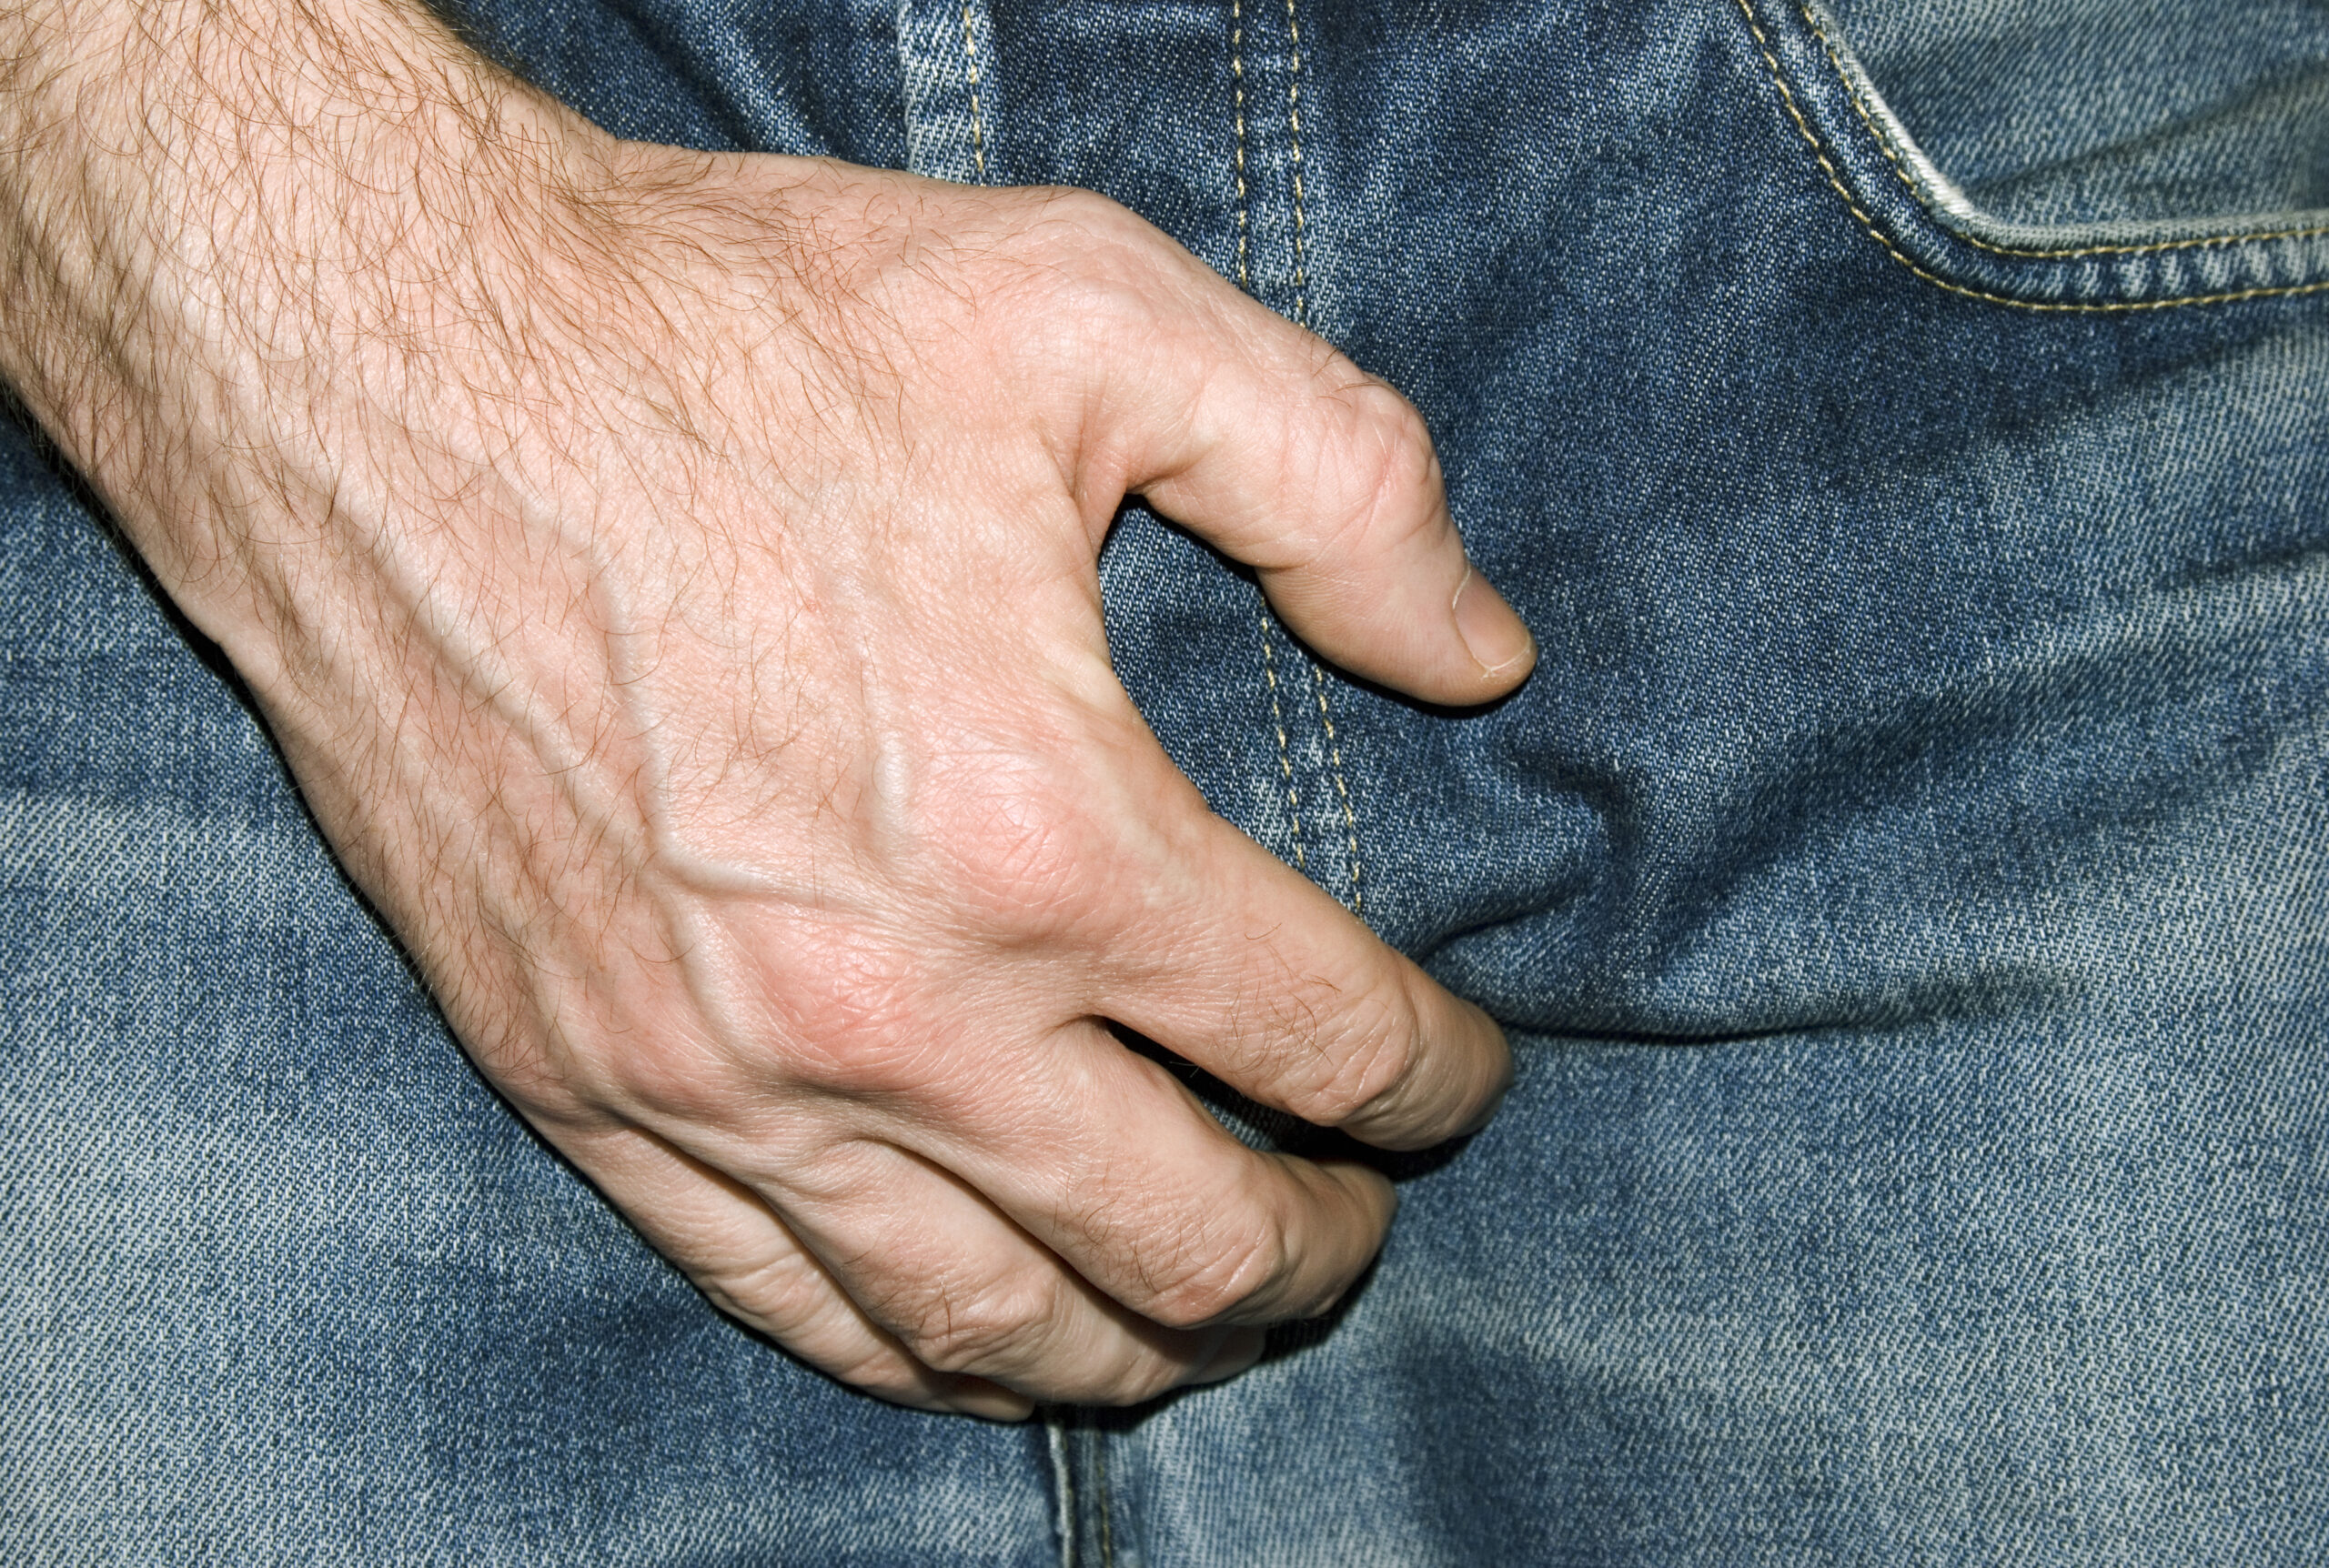 et nærbilde av en persons hånd på jeansen hans.